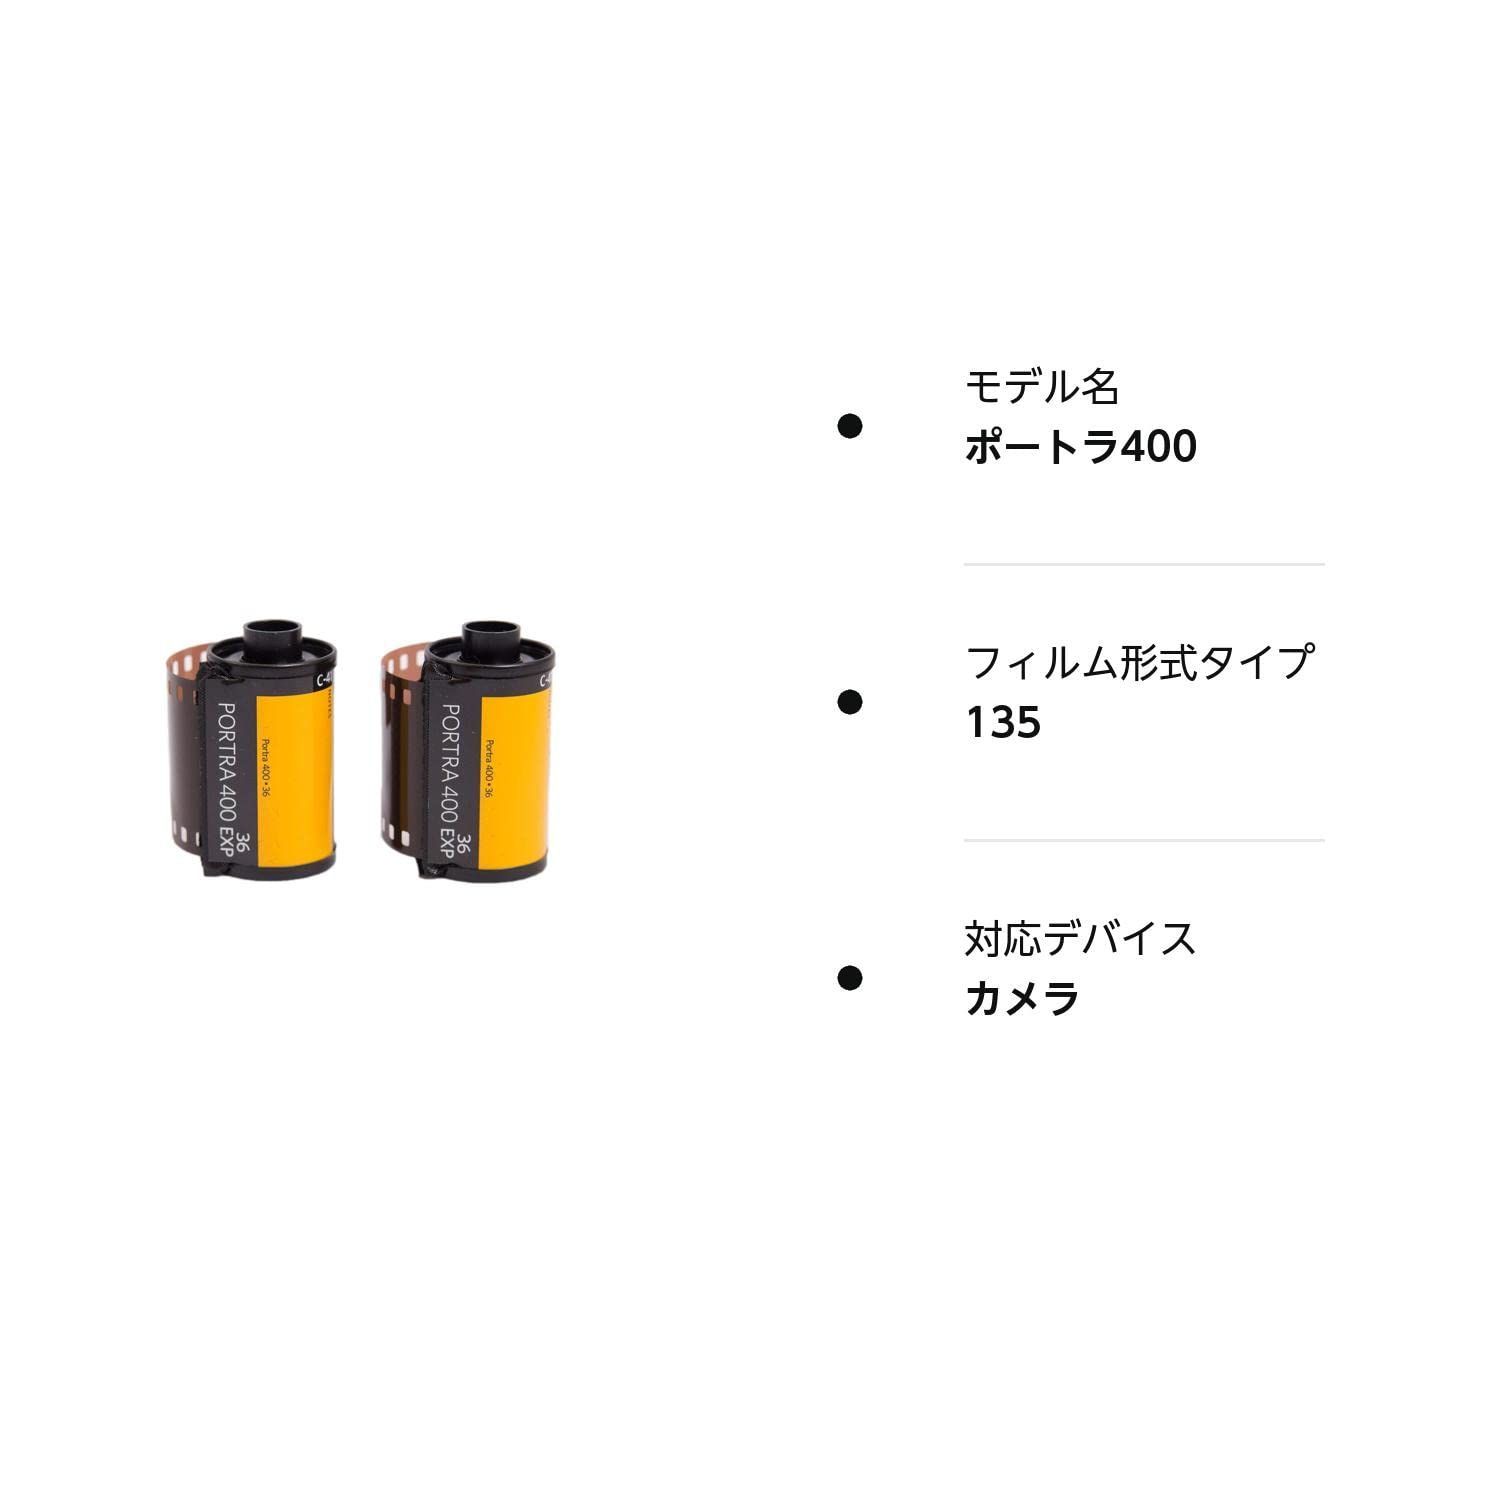 人気商品】Kodak カラーネガティブフィルム 35mm ポートラ400 36枚 2本